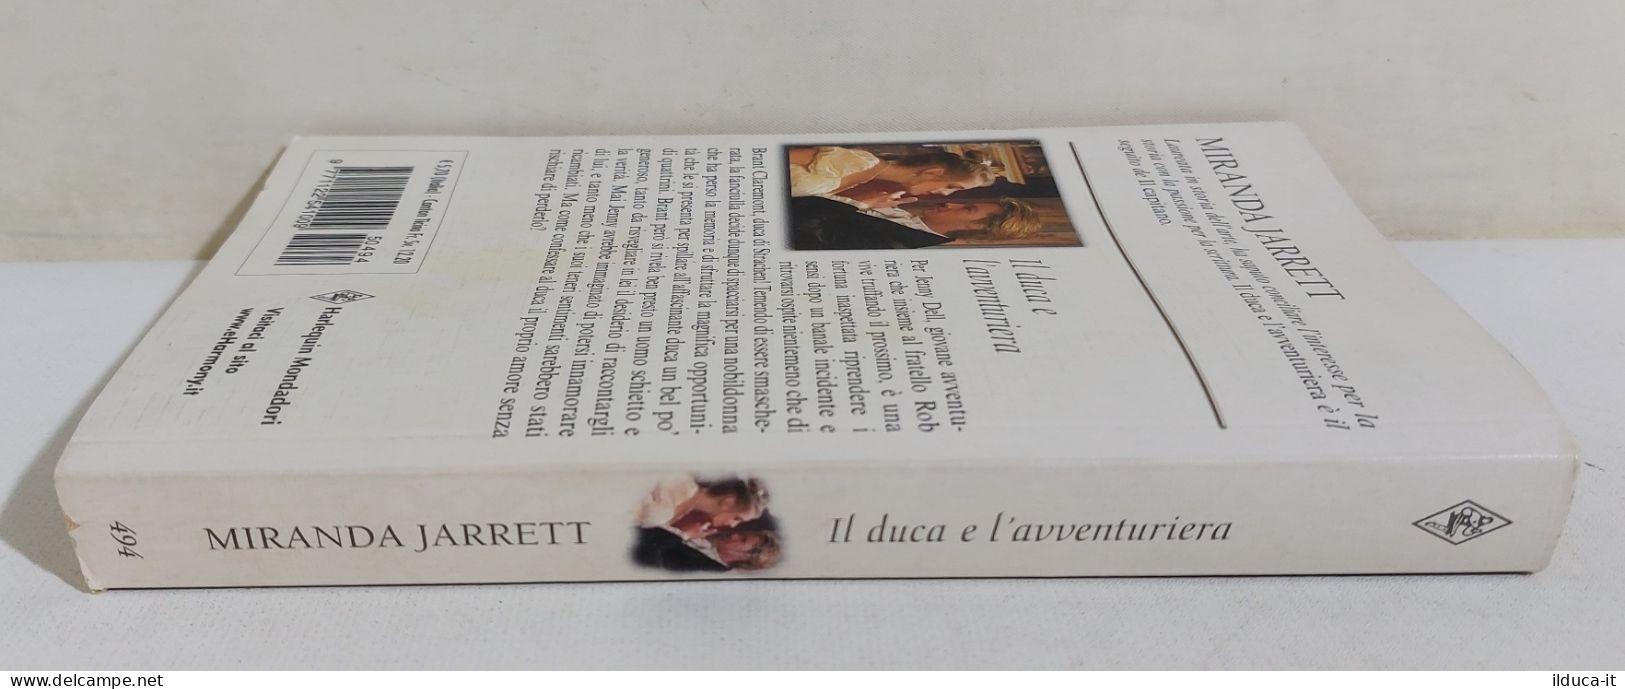 37238 V Miranda Jarrett - Il Duca E L'avventuriera - Harlequin Mondadori 2005 - Classic